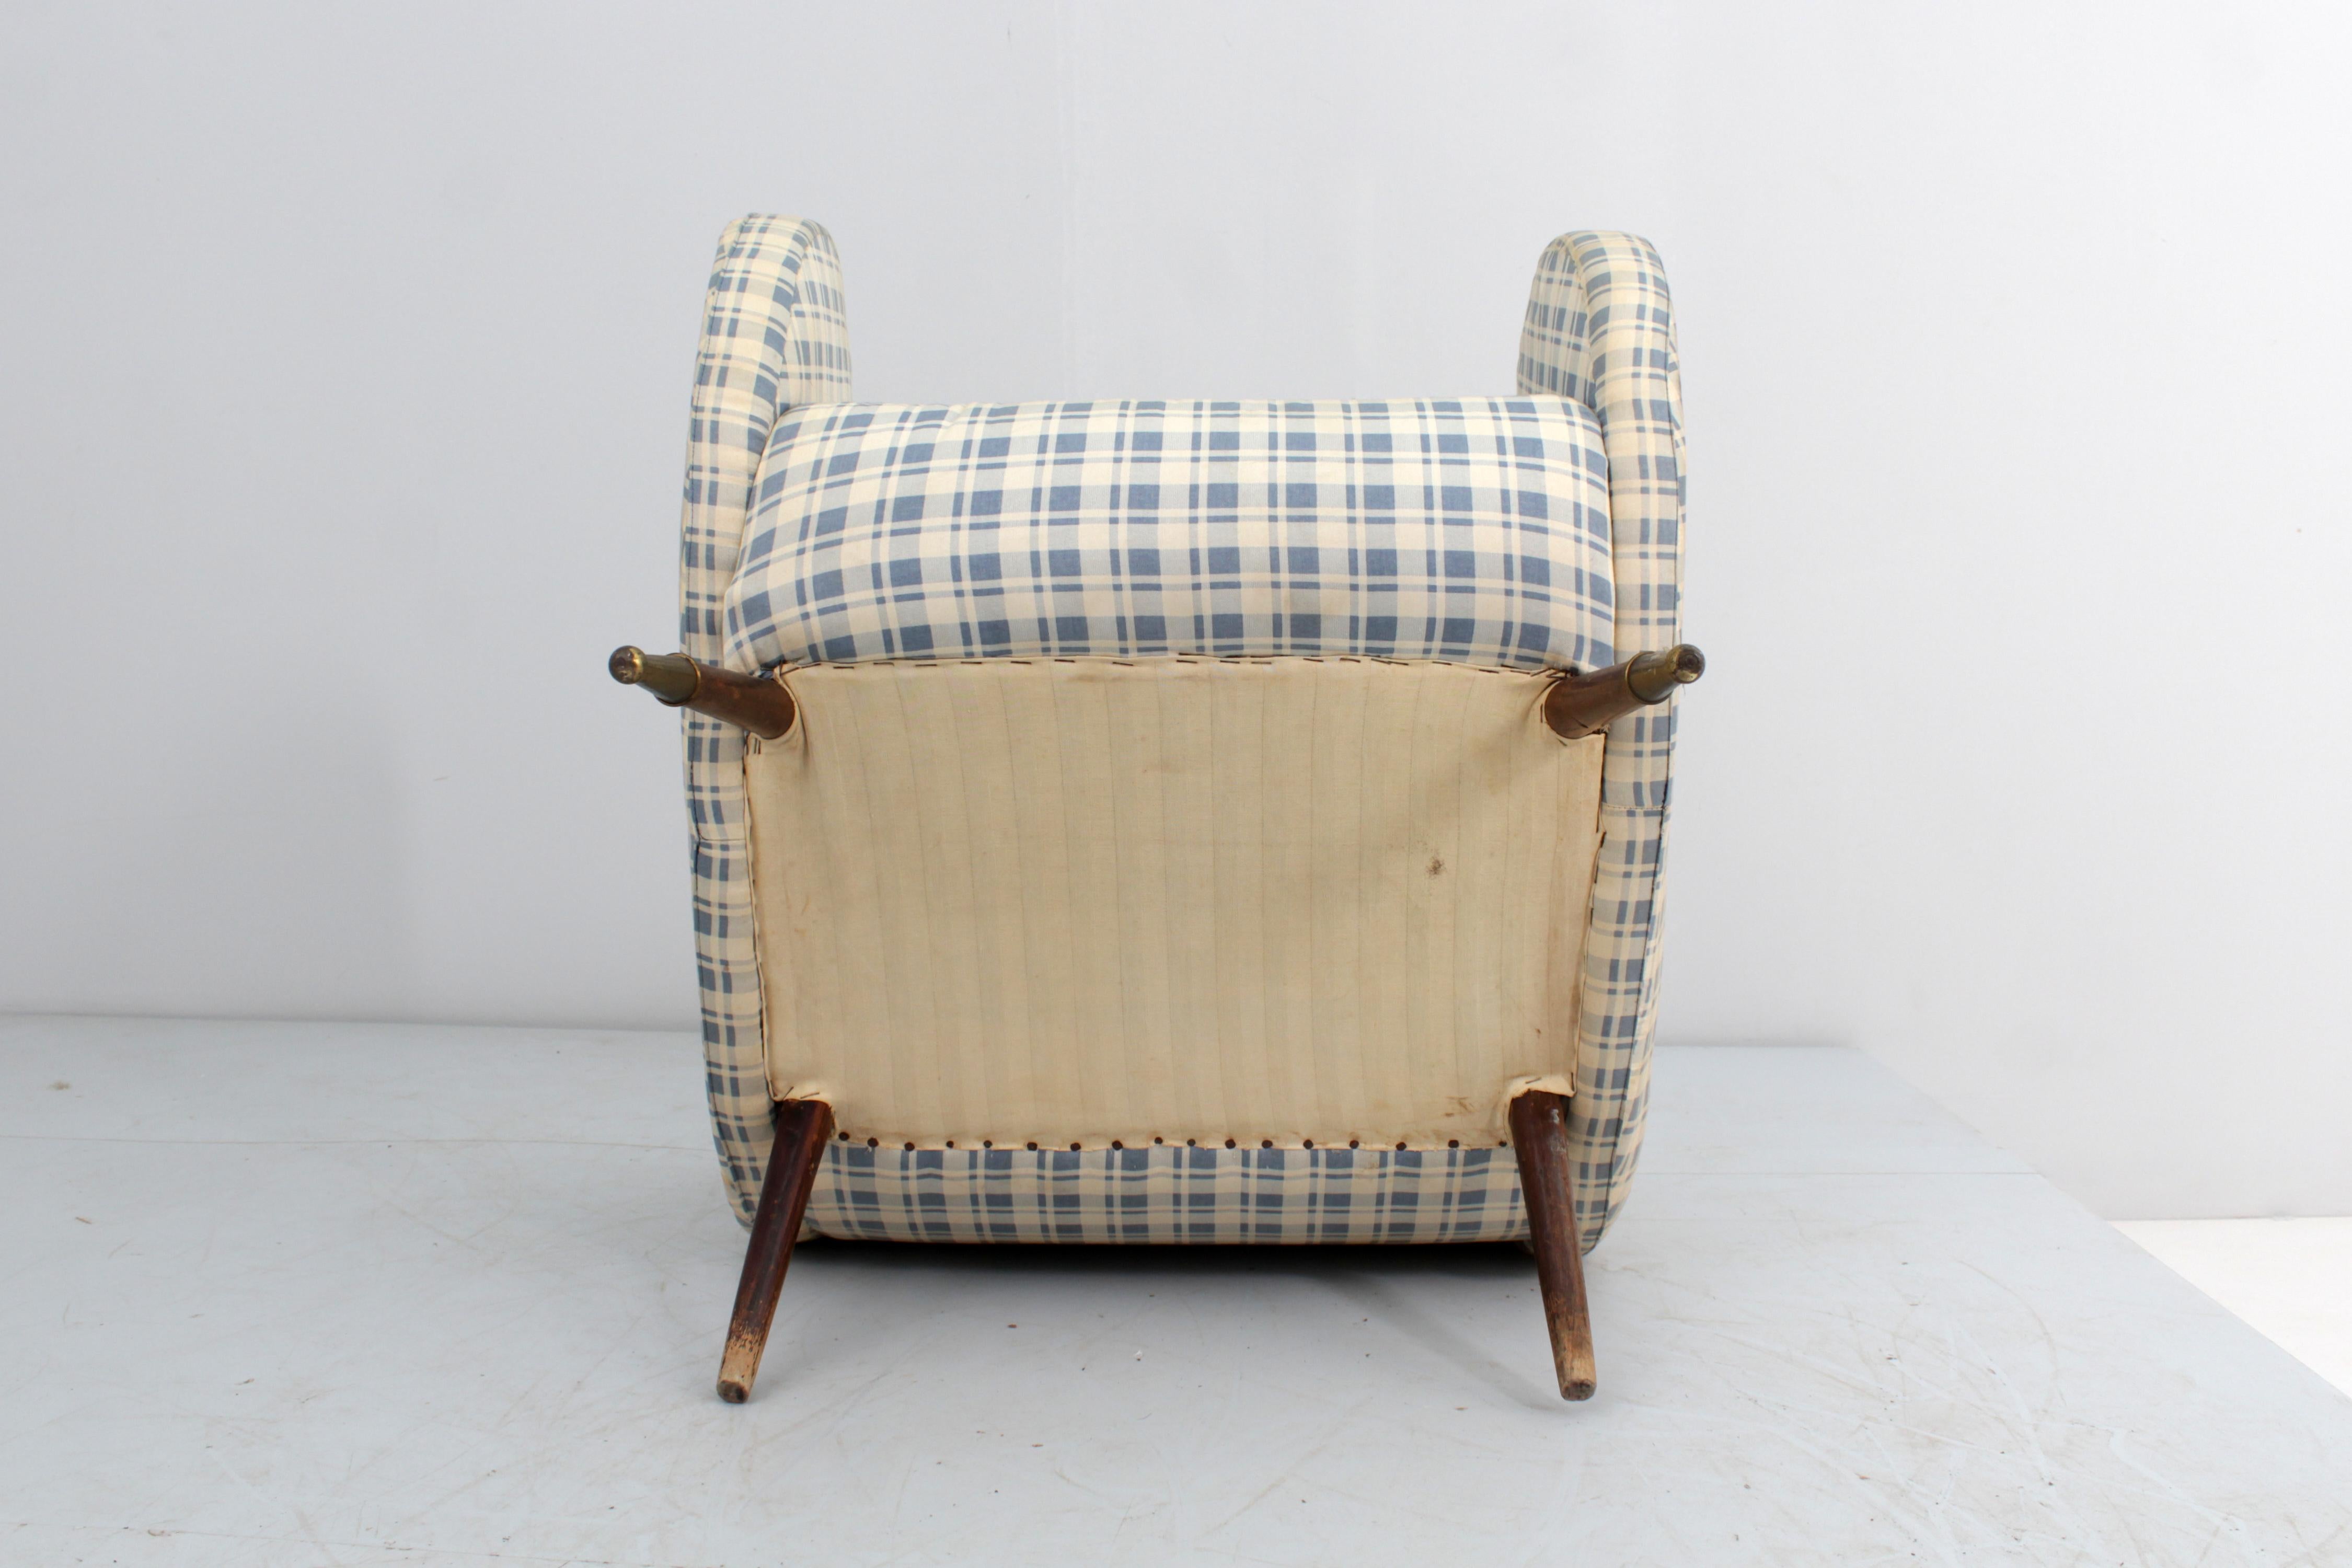 Très beau fauteuil à structure en bois recouvert de tissu à carreaux, avec pieds en bois et embouts en laiton. Production italienne dans le style du modèle 